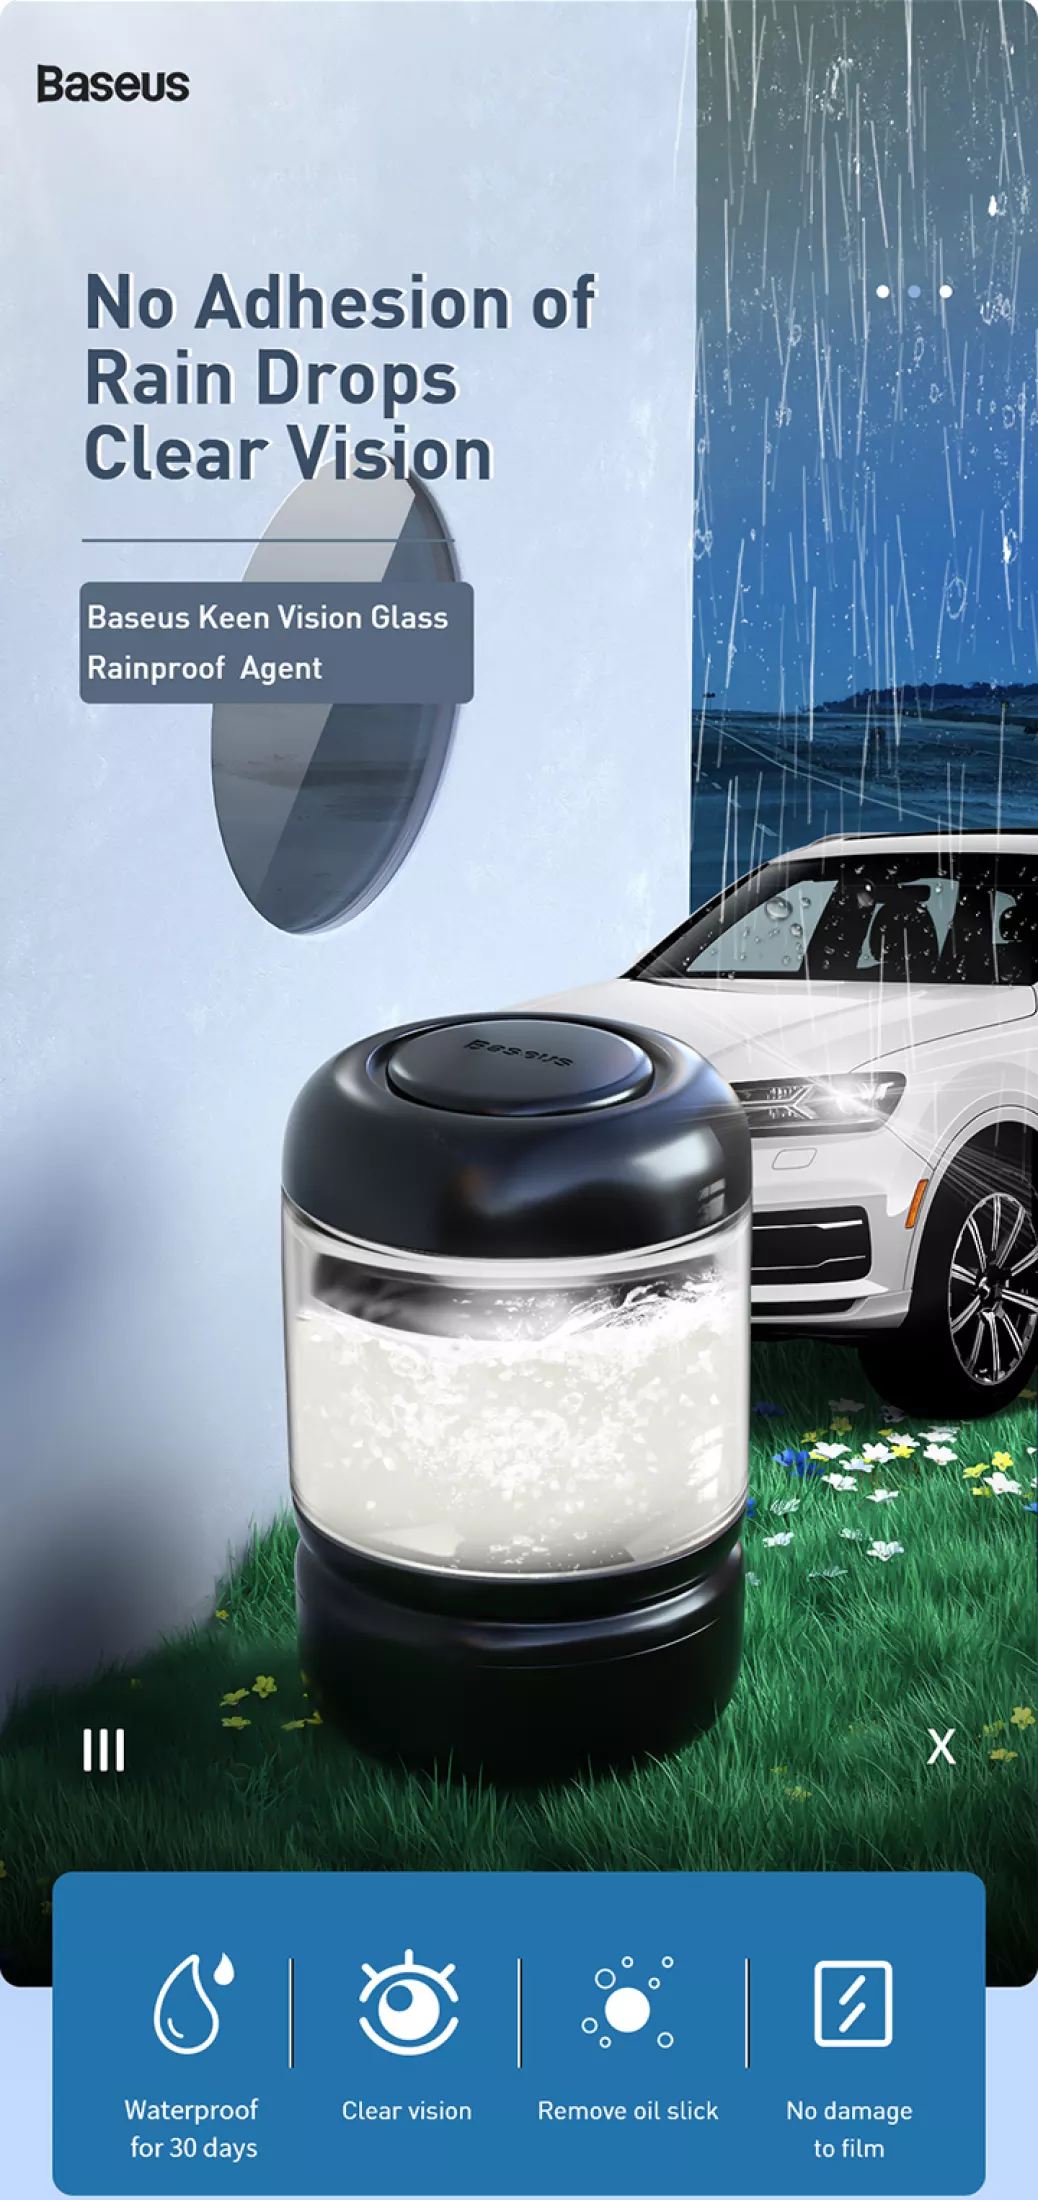 Baseus Keen Vision Car Glass Rainproof Agent